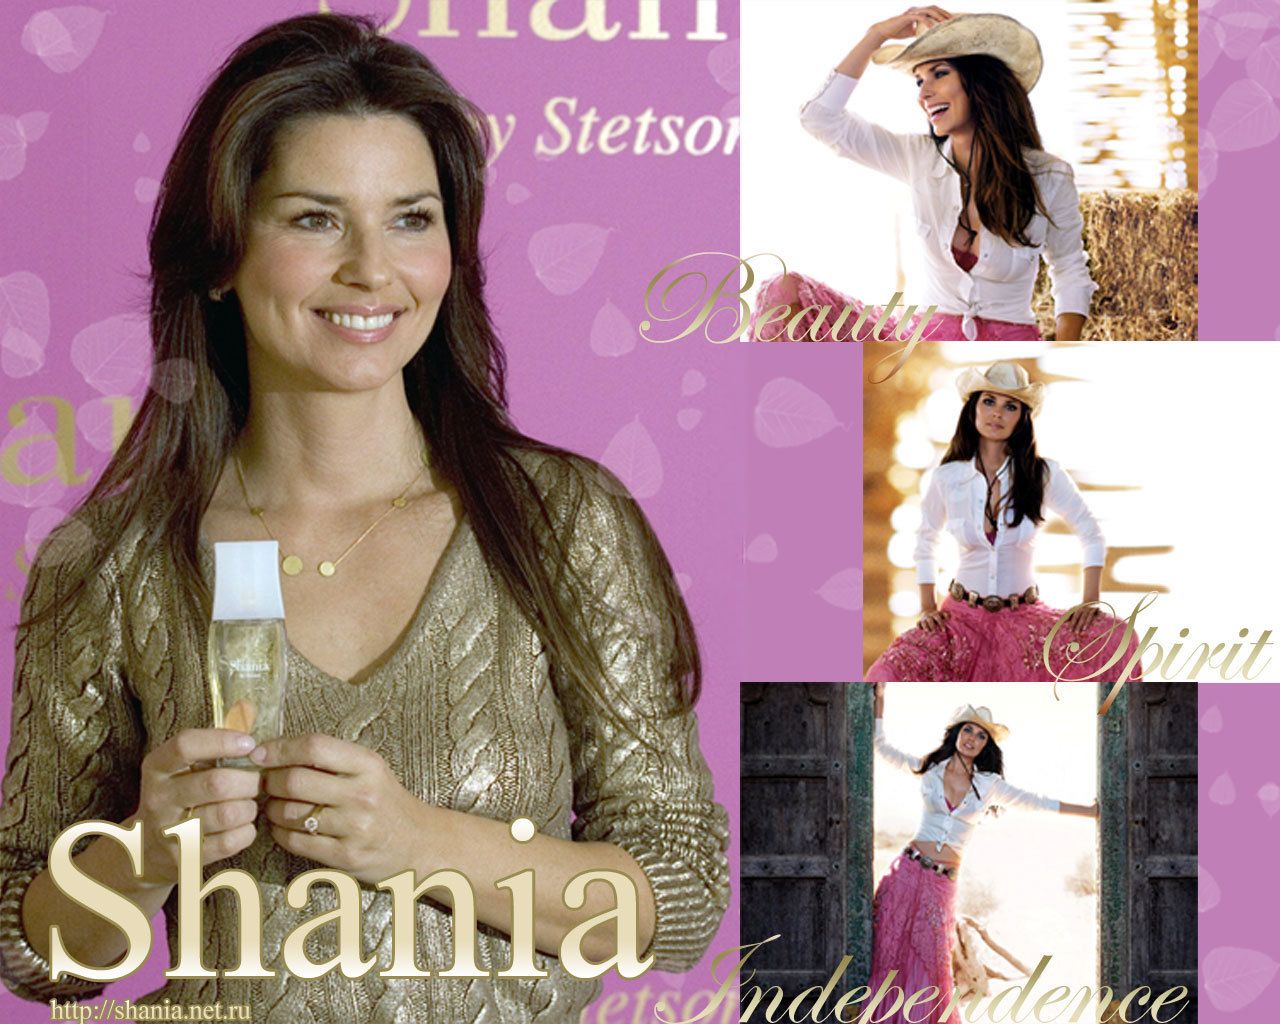 Shania Twain - Shania Twain Wallpaper (22670525) - Fanpop